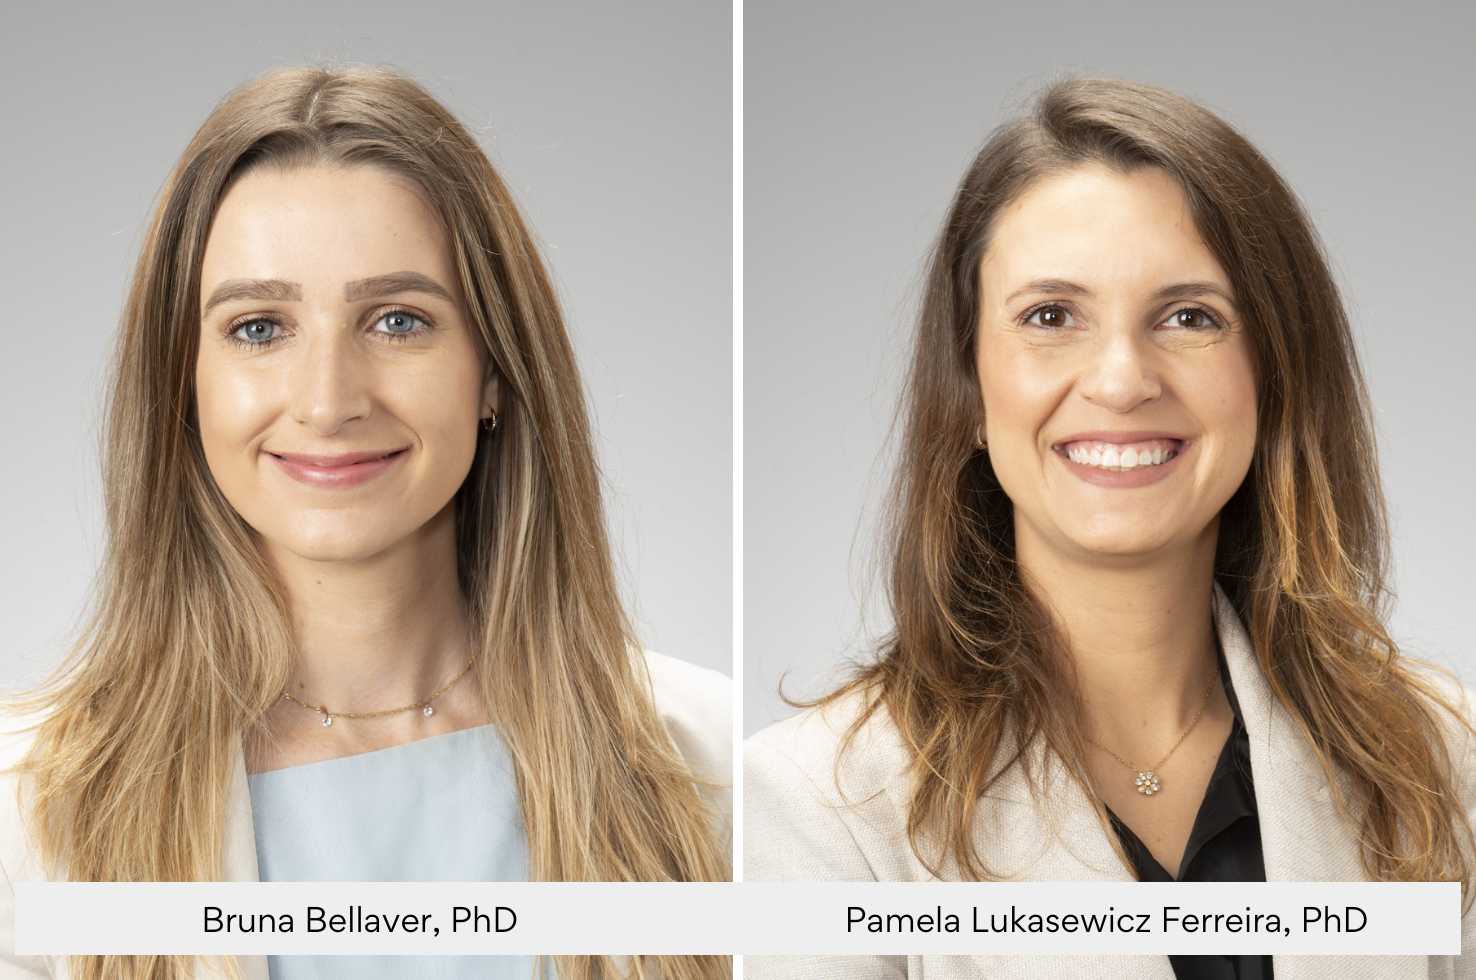 Dr. Bruna Bellaver and Dr. Pamela Lukasewicz Ferreira